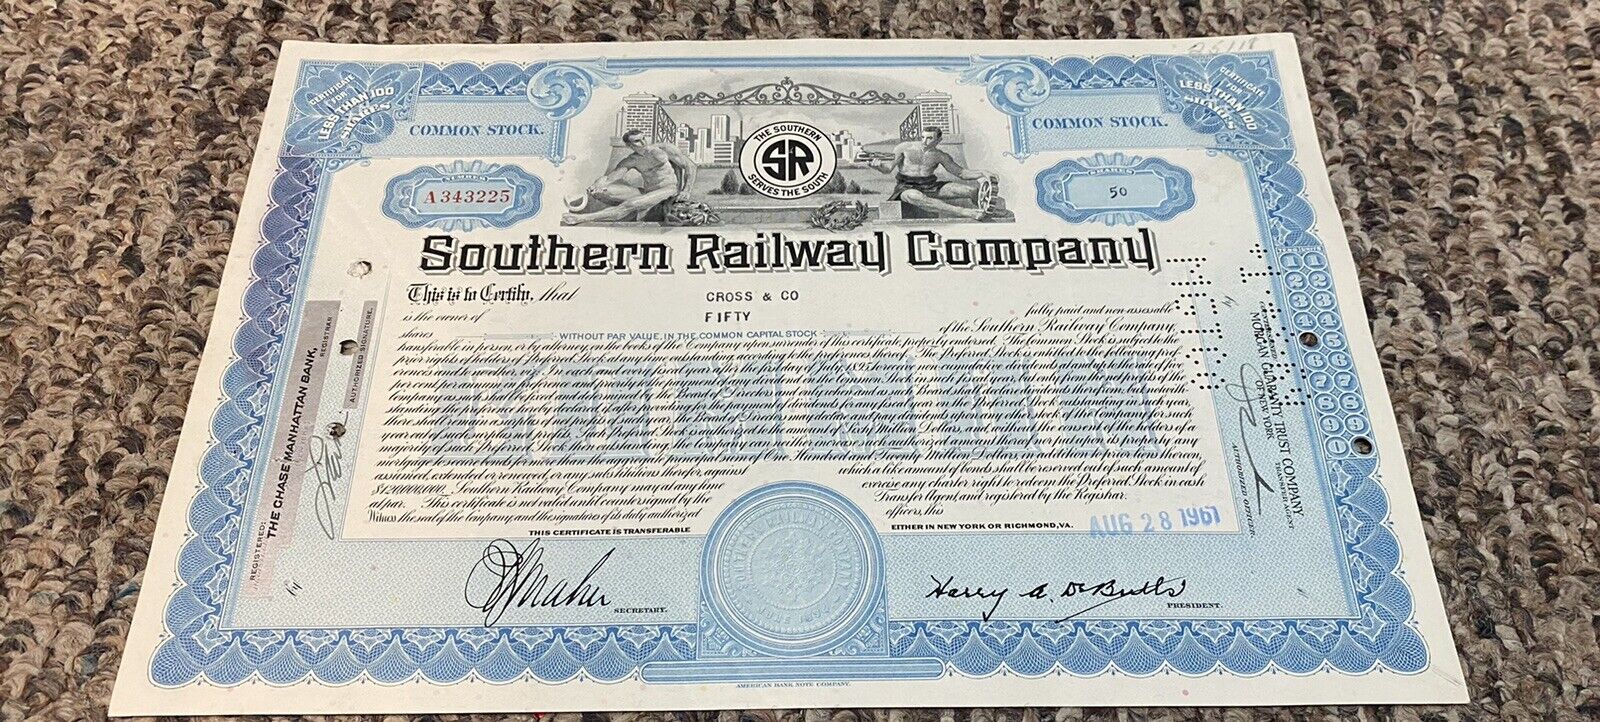 新品未使用 1961 Southern Railway Company Railroad 100 店 Stock Certificate sha